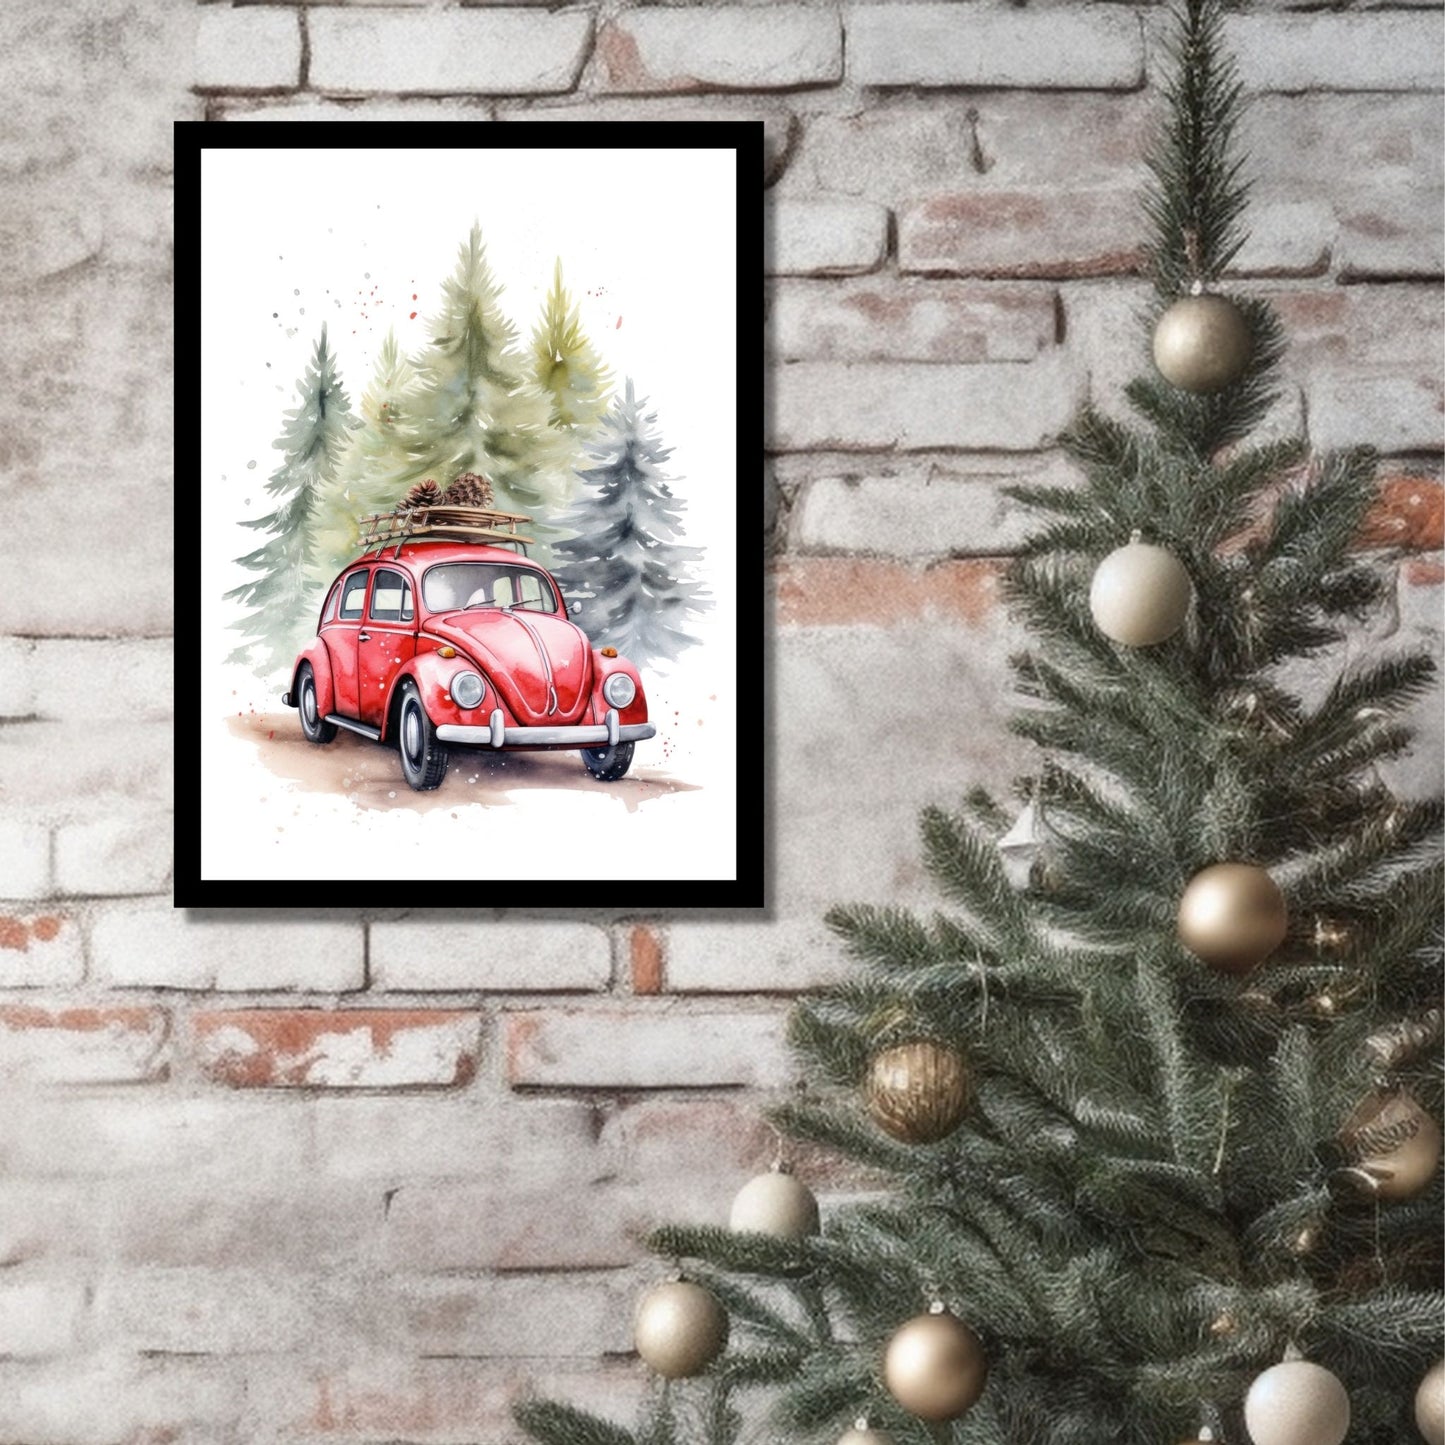 Plakat og lerret med grafisk julemotiv av gammel, rød volkswagen boble. Bilen kjører i en skog, og på taket er den lastet med furukongler. På bildet henger motivet som plakaten i en sort ramme på en murvegg ved siden av et juletre.